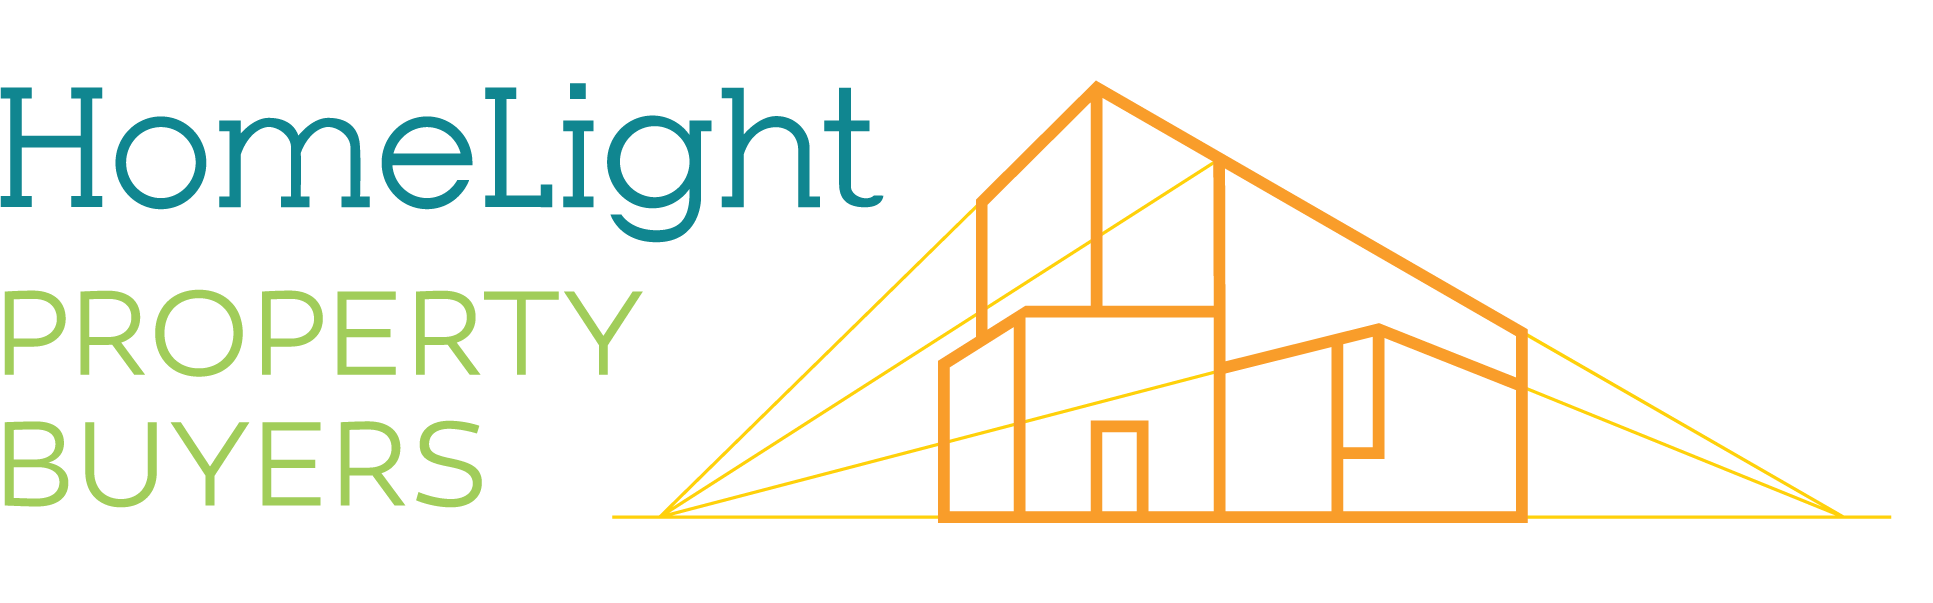 Homelight Property Buyers